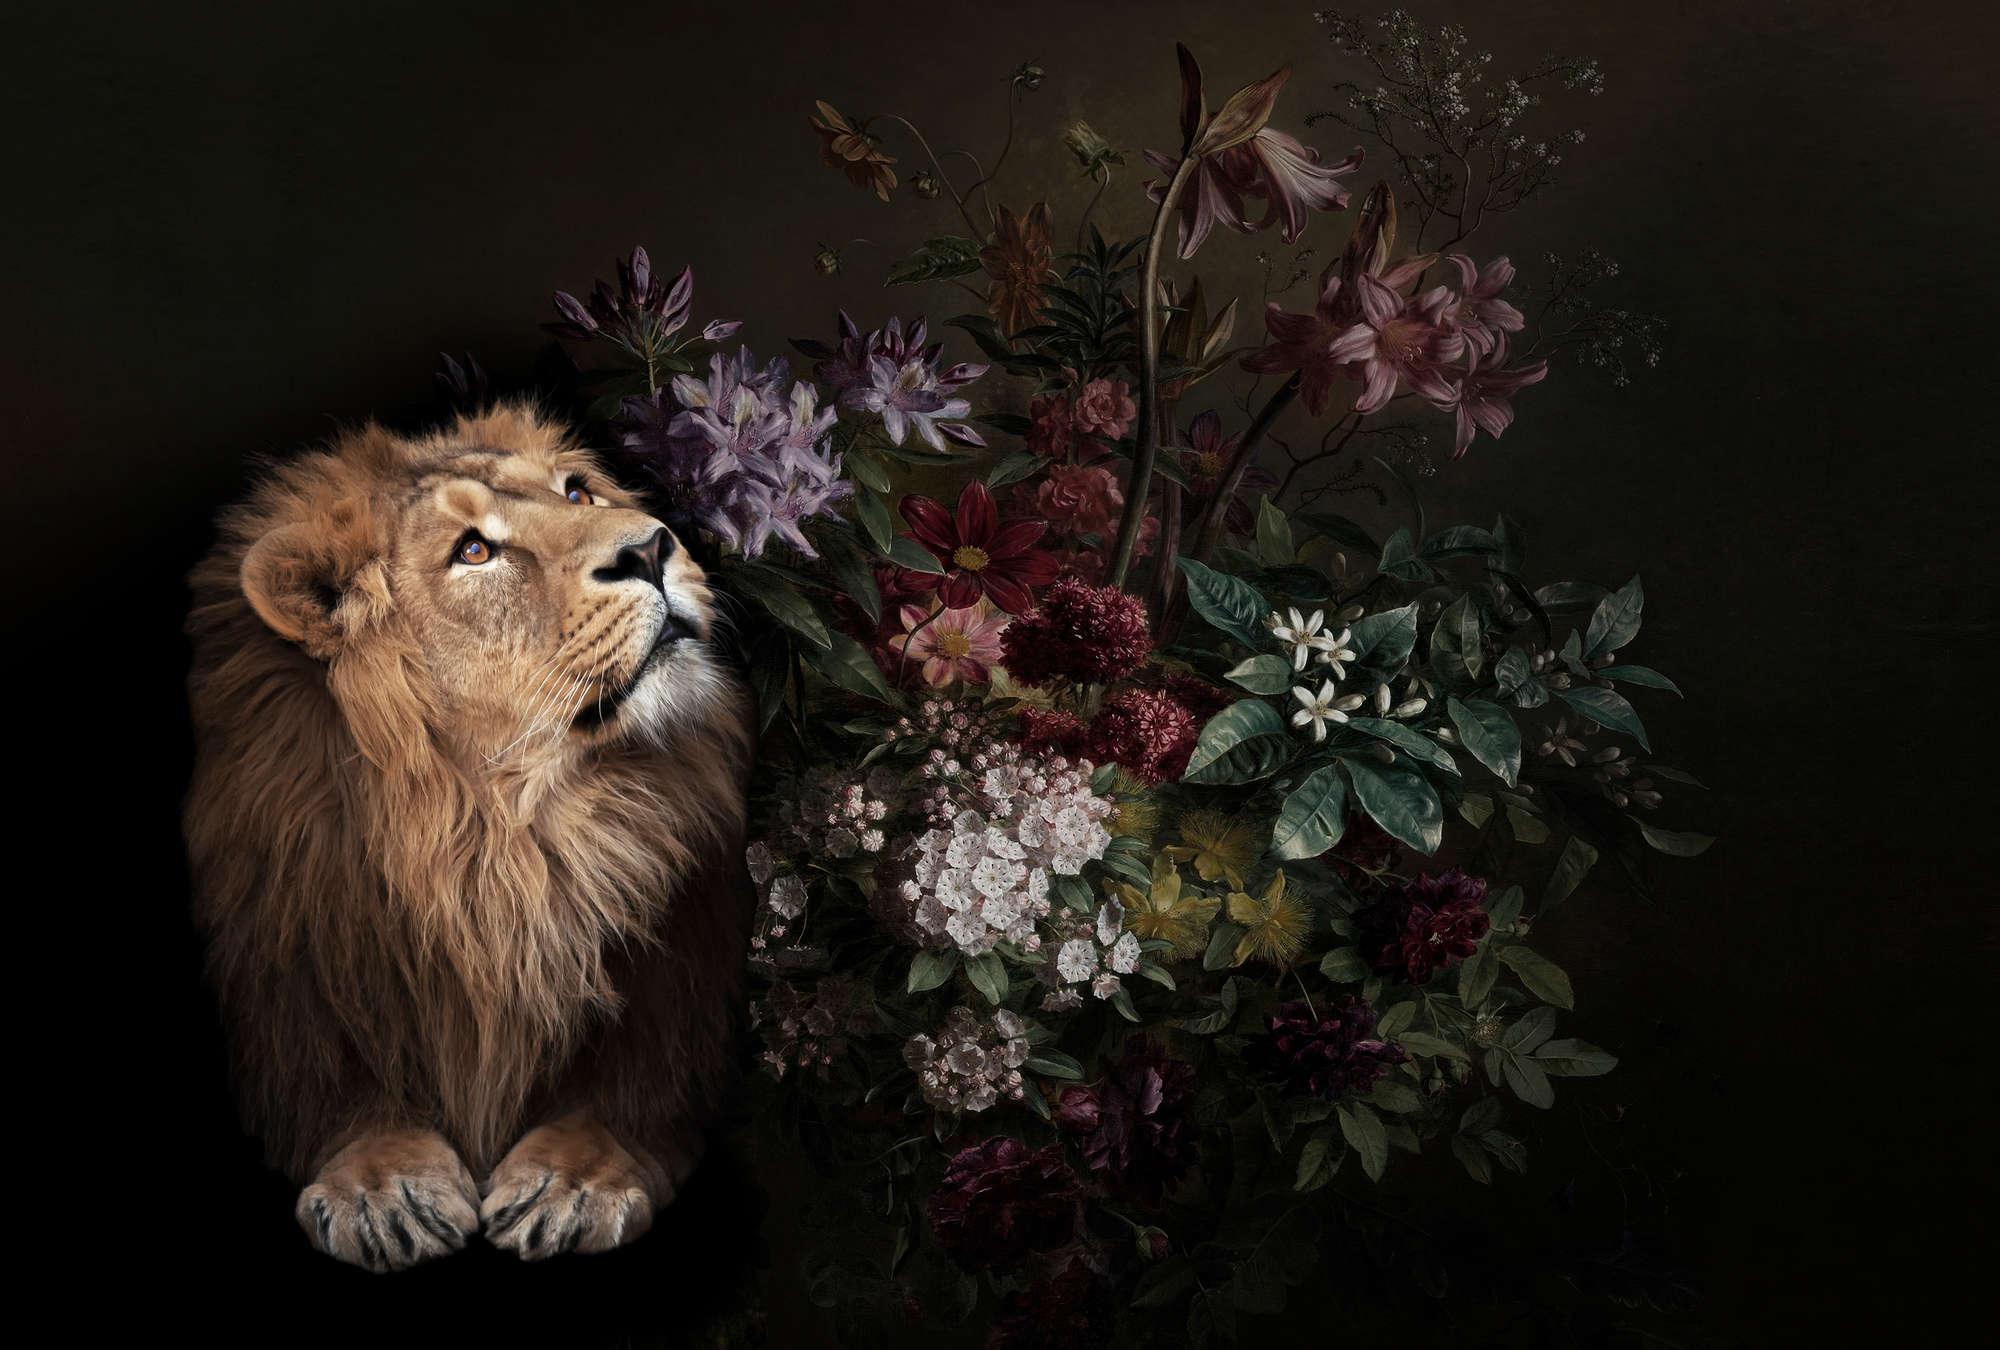             Fotomurali Ritratto di leone con fiori - Walls by Patel
        